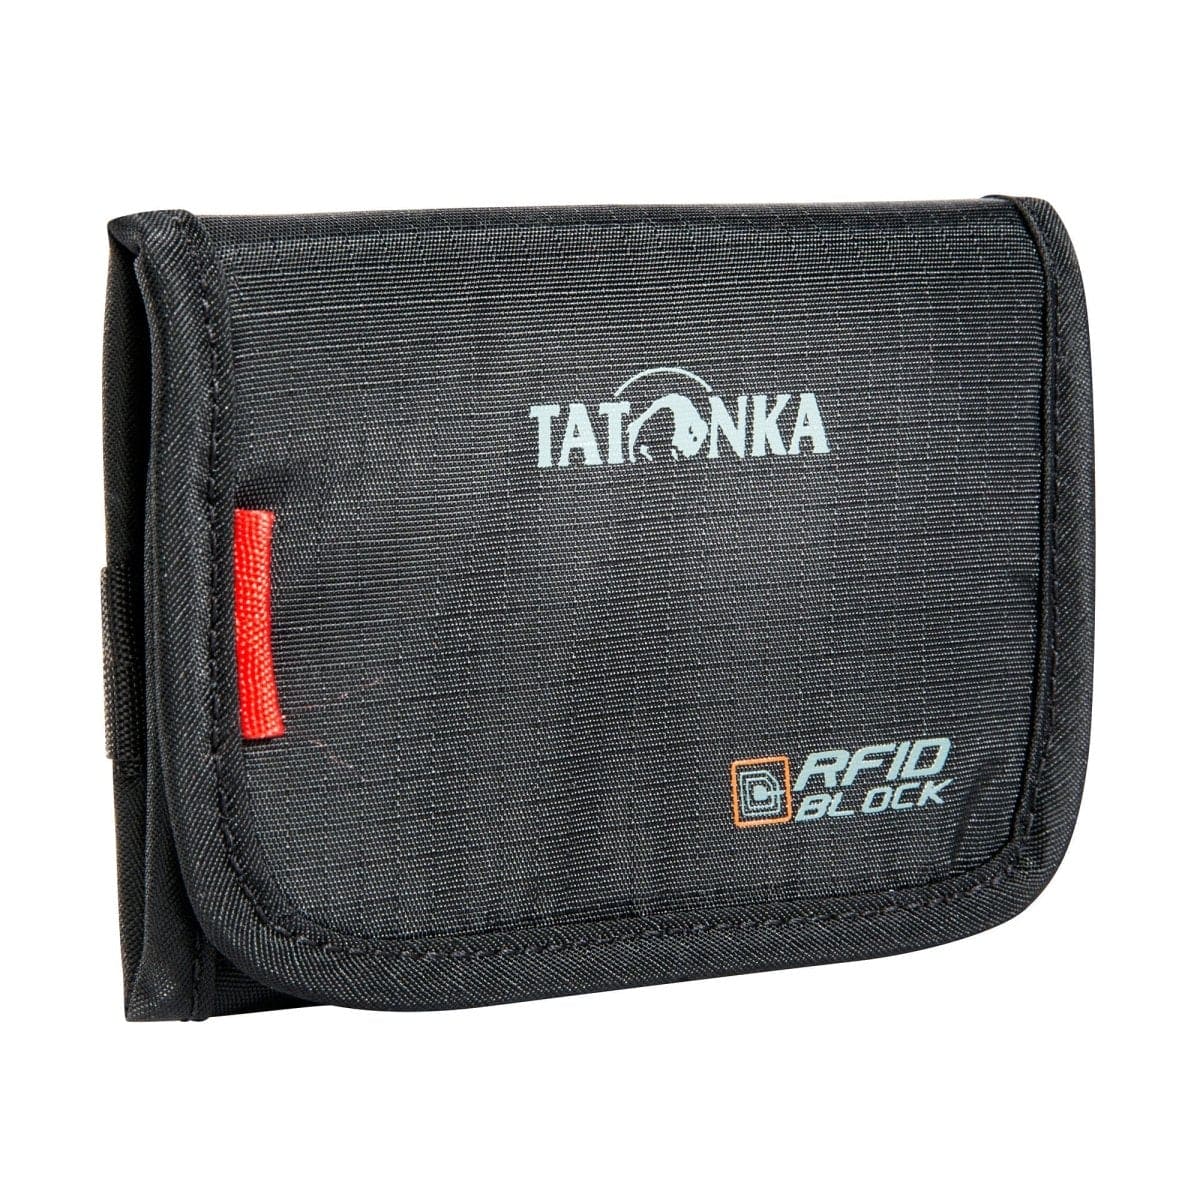 Tatonka FOLDER RFID B GELDBEUTEL - Riegeladventure-Tools.com